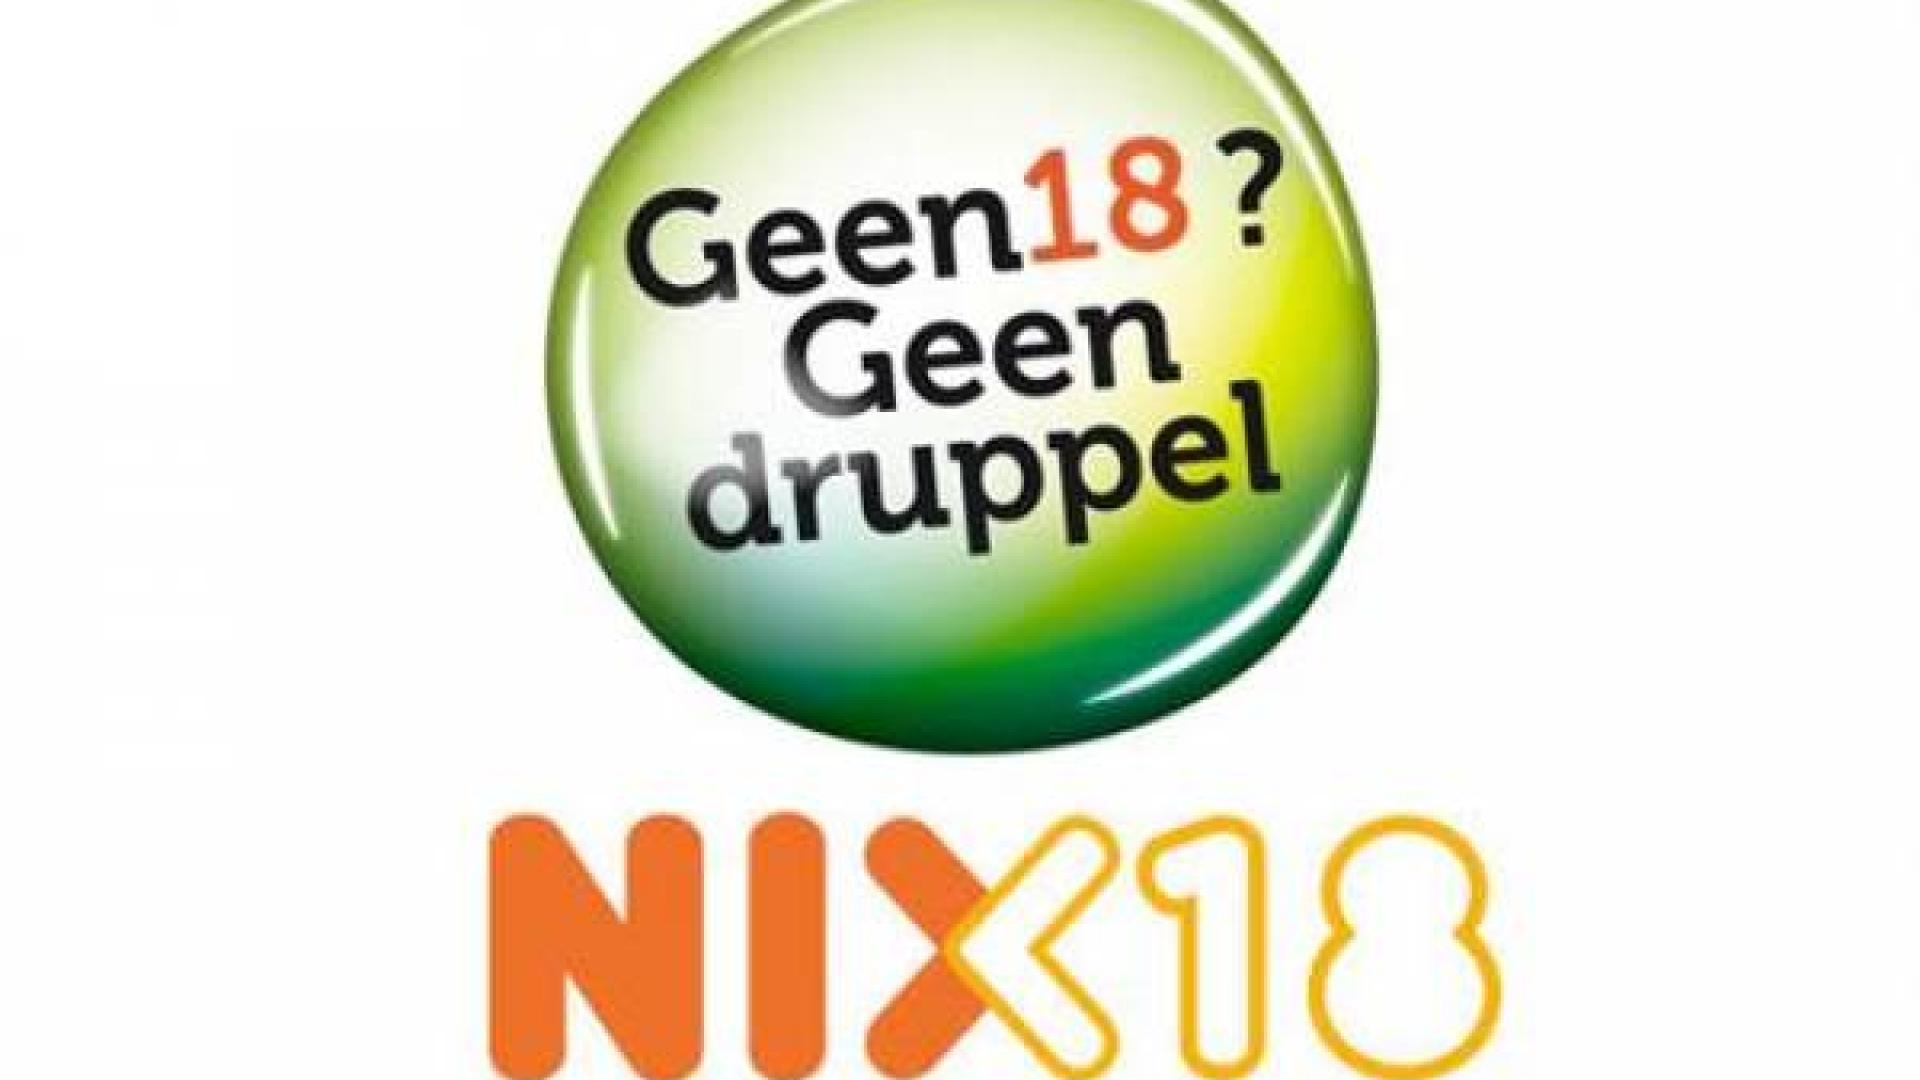 NIX18 druppel